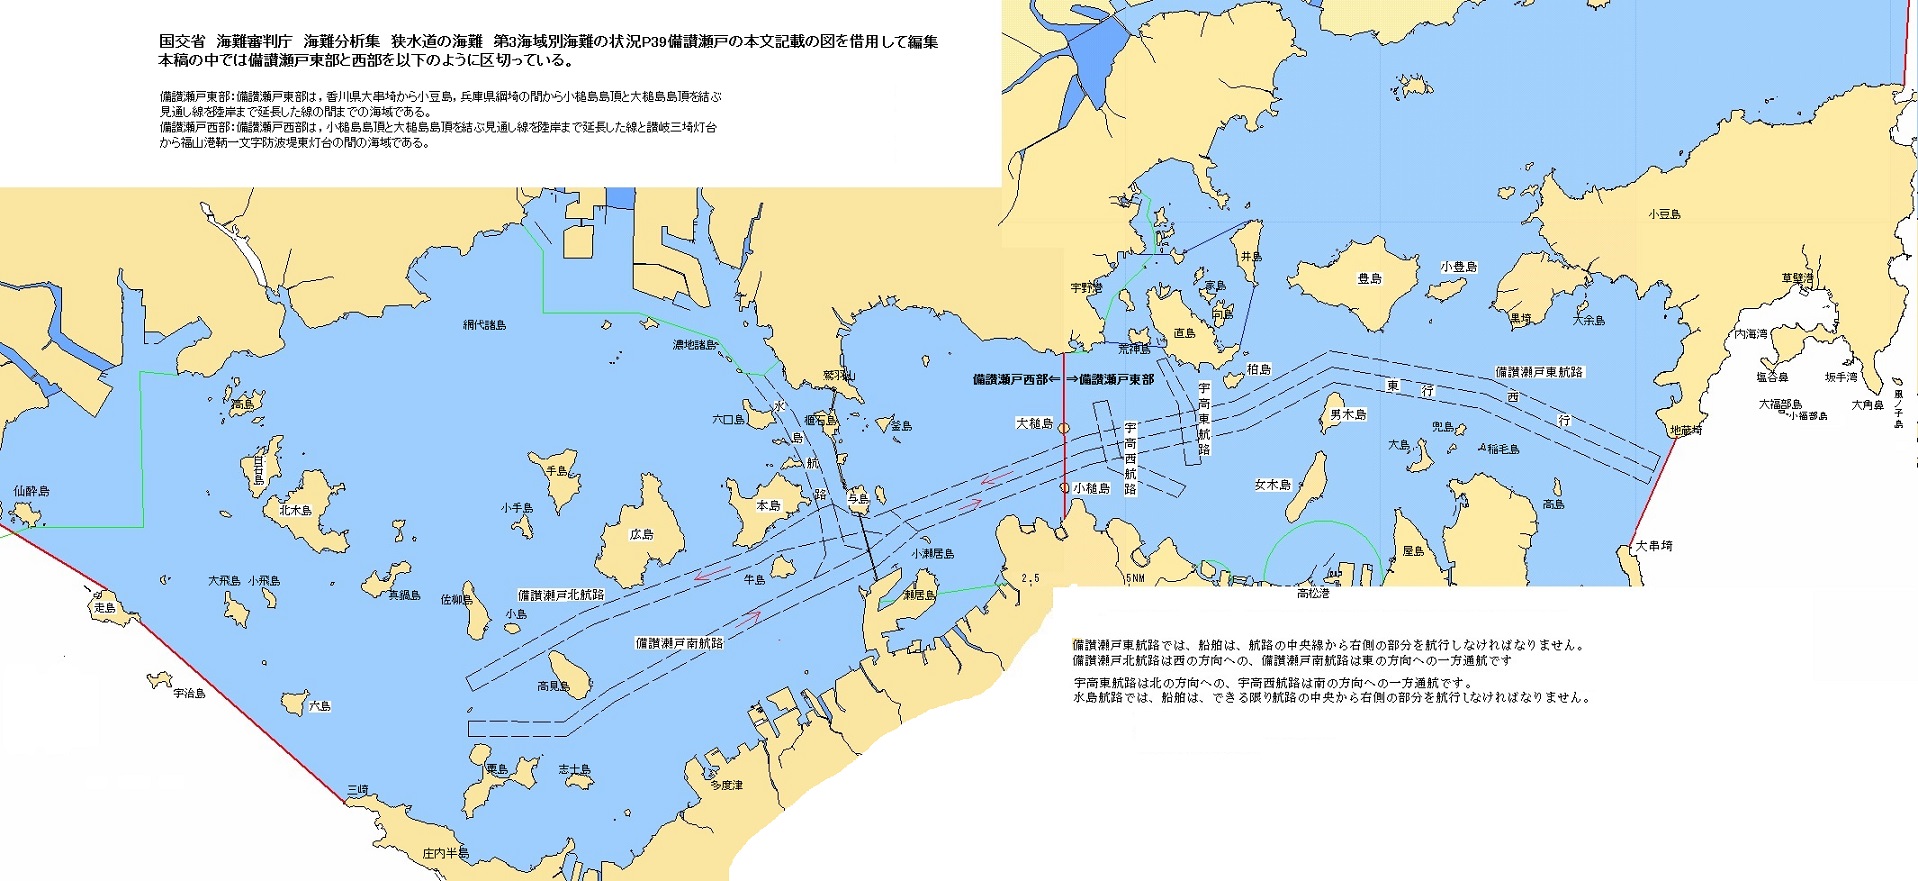 針路は西へ 瀬戸内海島めぐりKAKESU-３の航路図、備讃瀬戸航路図 